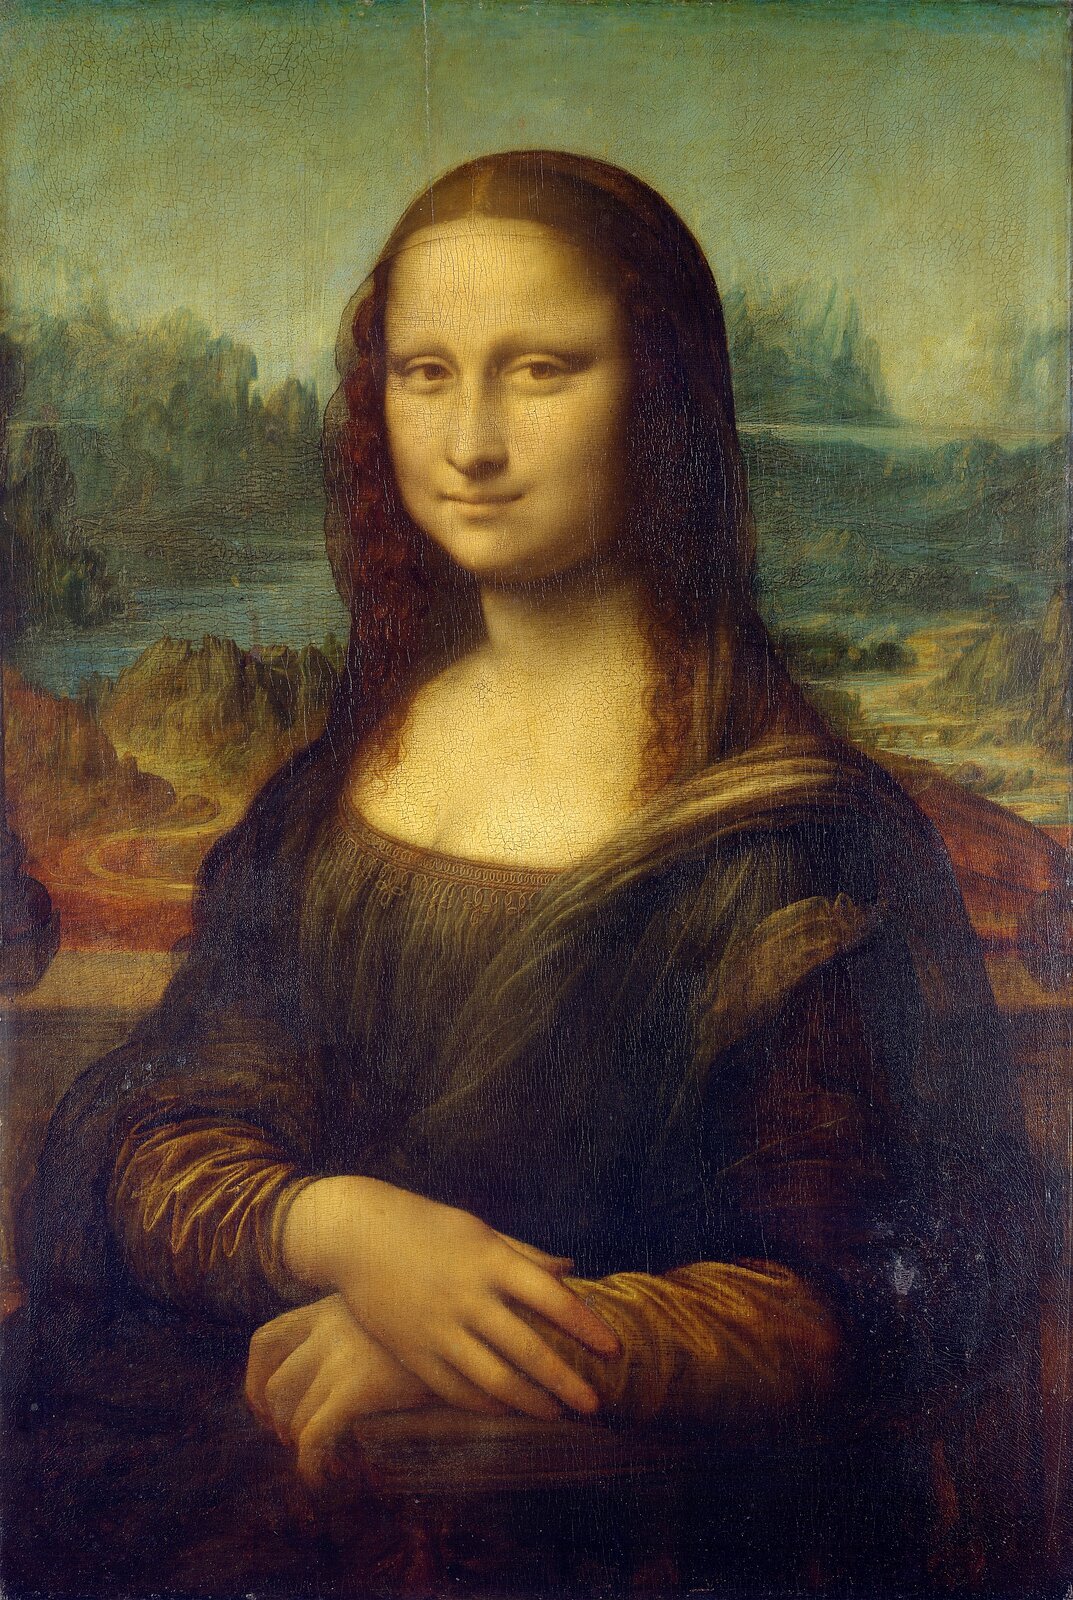 Ilustracja przedstawia portret Leonarda da Vinci „Mona Lisa”, na którym na pierwszym planie ukazana jest w połowie postaci Lisa Gherardini. Kobieta ujęta została z lewego półprofilu. Stoi na tle dalekiego, rozległego pejzażu z założonymi na pulpicie rękoma. Ma luźno rozpuszczone włosy, wysokie czoło, a na jej twarzy widnieje tajemniczy uśmiech. Portret charakteryzuje się miękkością modelunku i subtelną elegancją pozy.